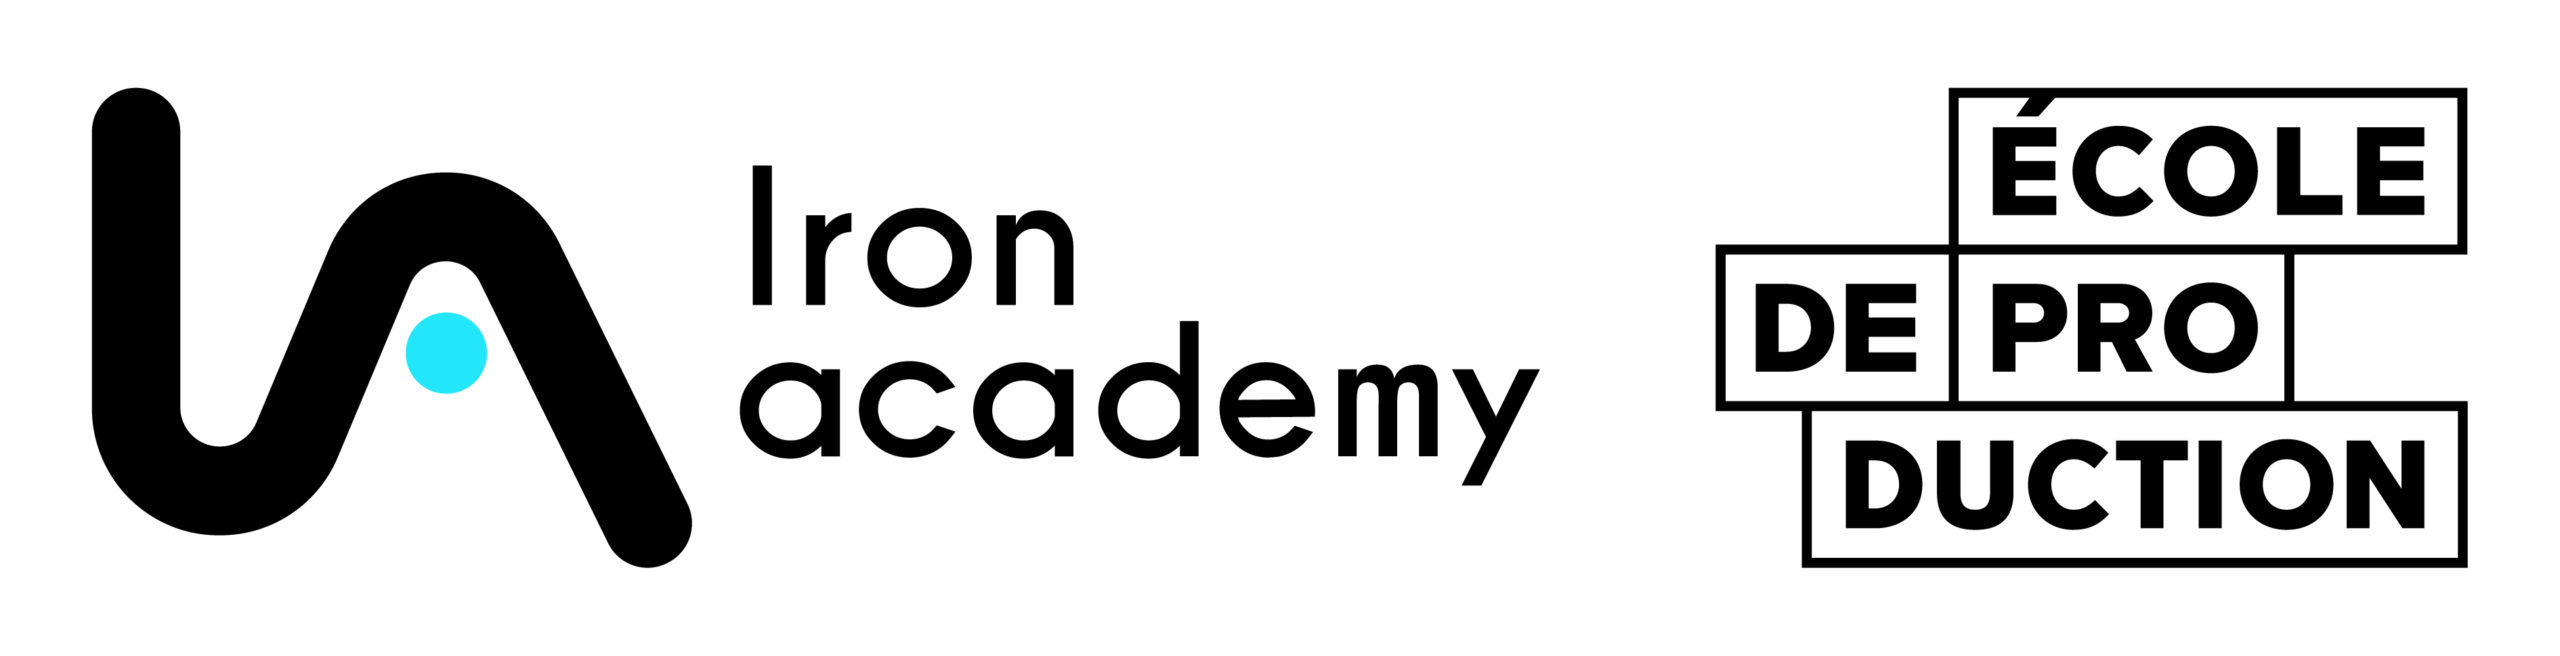 Ecole de Production Grand Paris Nord – Iron Academy